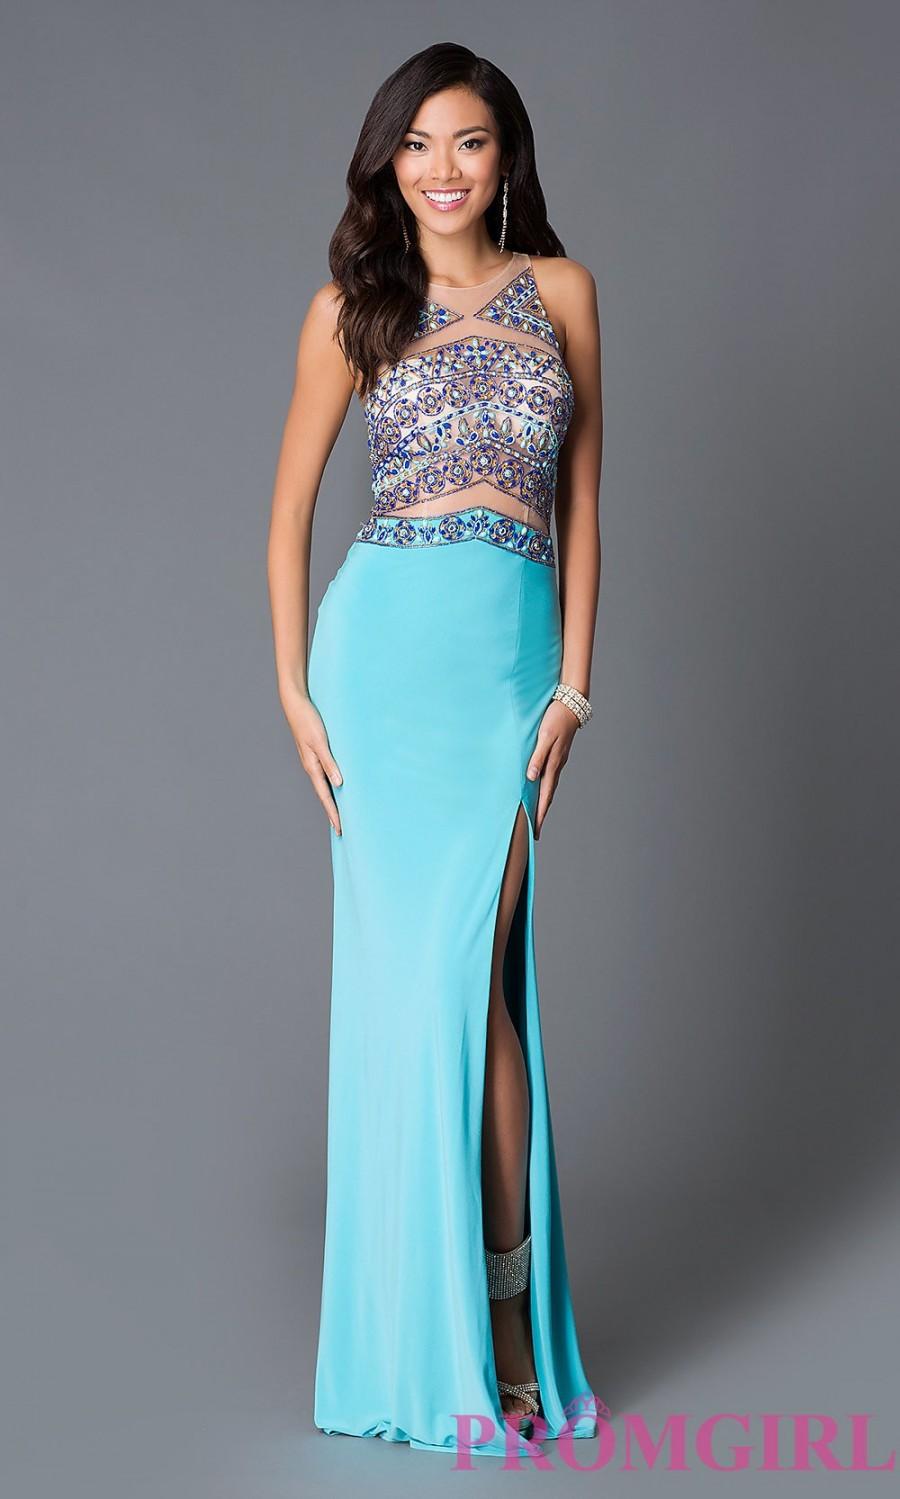 زفاف - Sleeveless Aqua Blue Jersey Prom Dress from JVN by Jovani - Discount Evening Dresses 